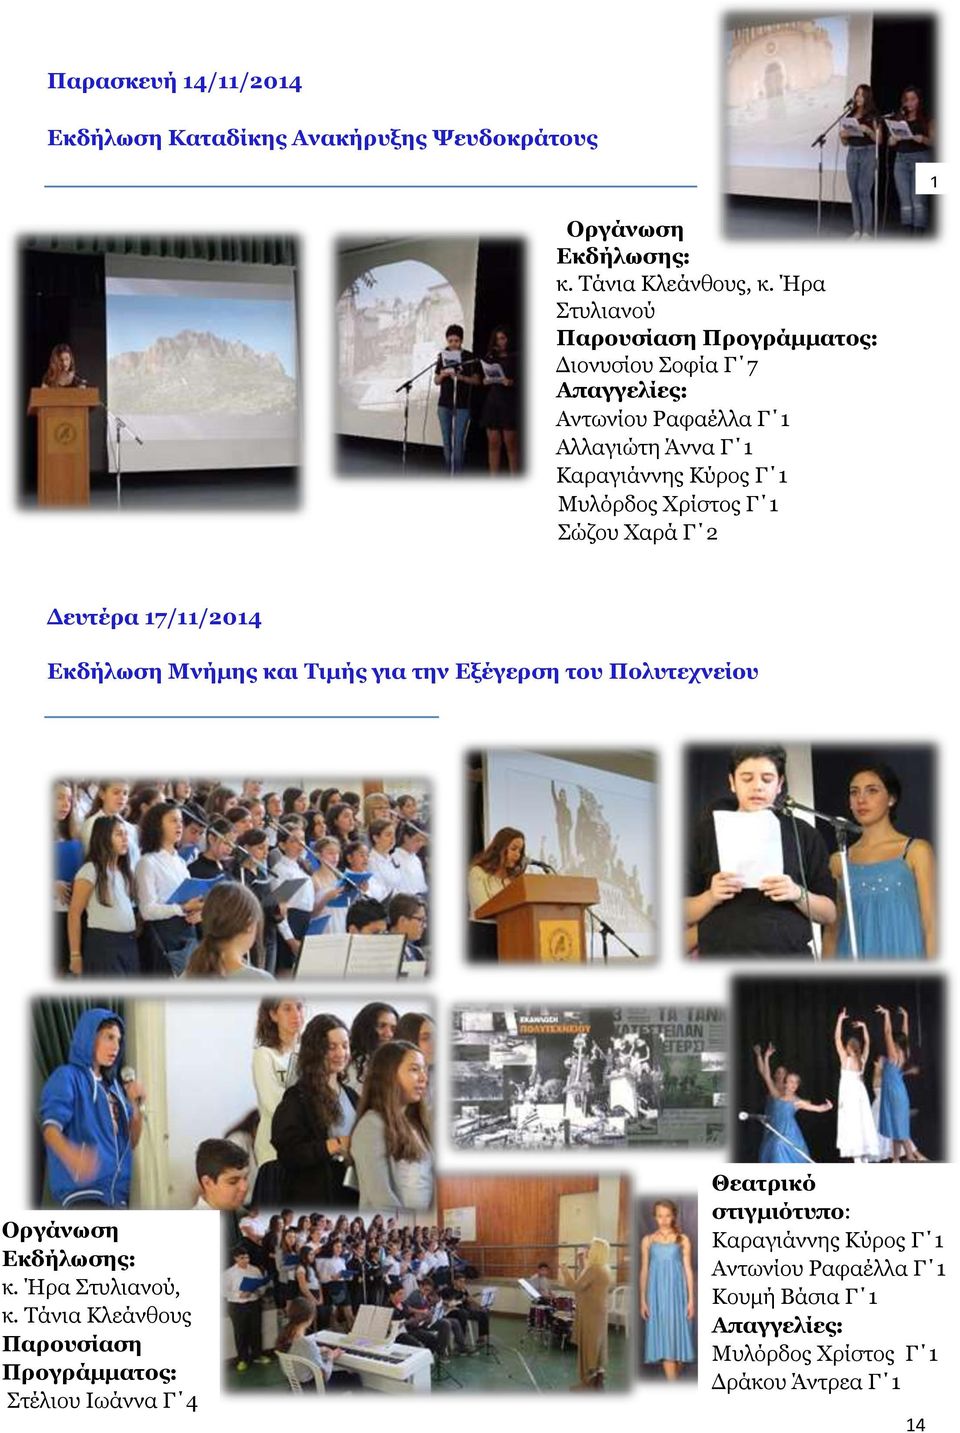 Χρίστος Γ 1 Σώζου Χαρά Γ 2 Δευτέρα 17/11/2014 Εκδήλωση Μνήμης και Τιμής για την Εξέγερση του Πολυτεχνείου Οργάνωση Εκδήλωσης: κ. Ήρα Στυλιανού, κ.